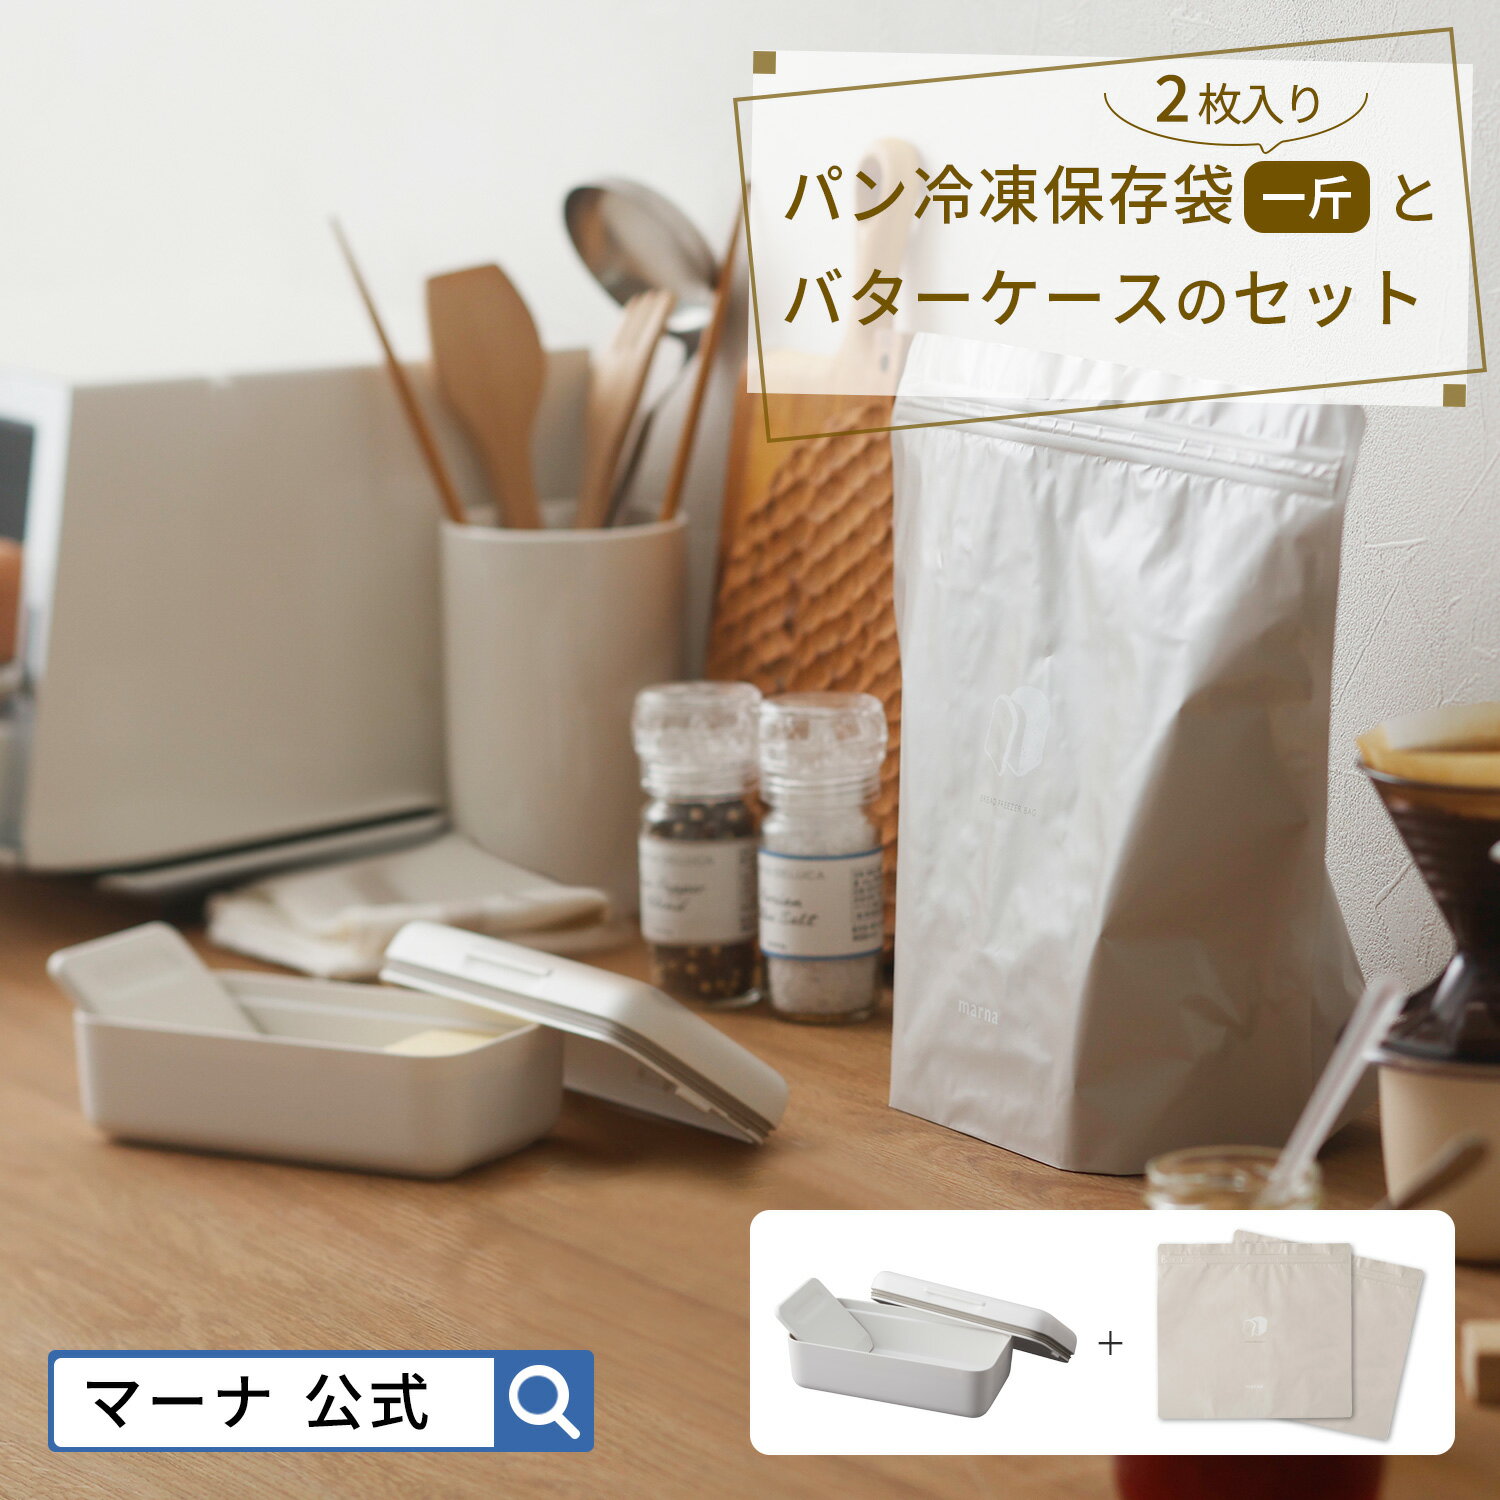 【マーナ公式】パン冷凍保存袋一斤